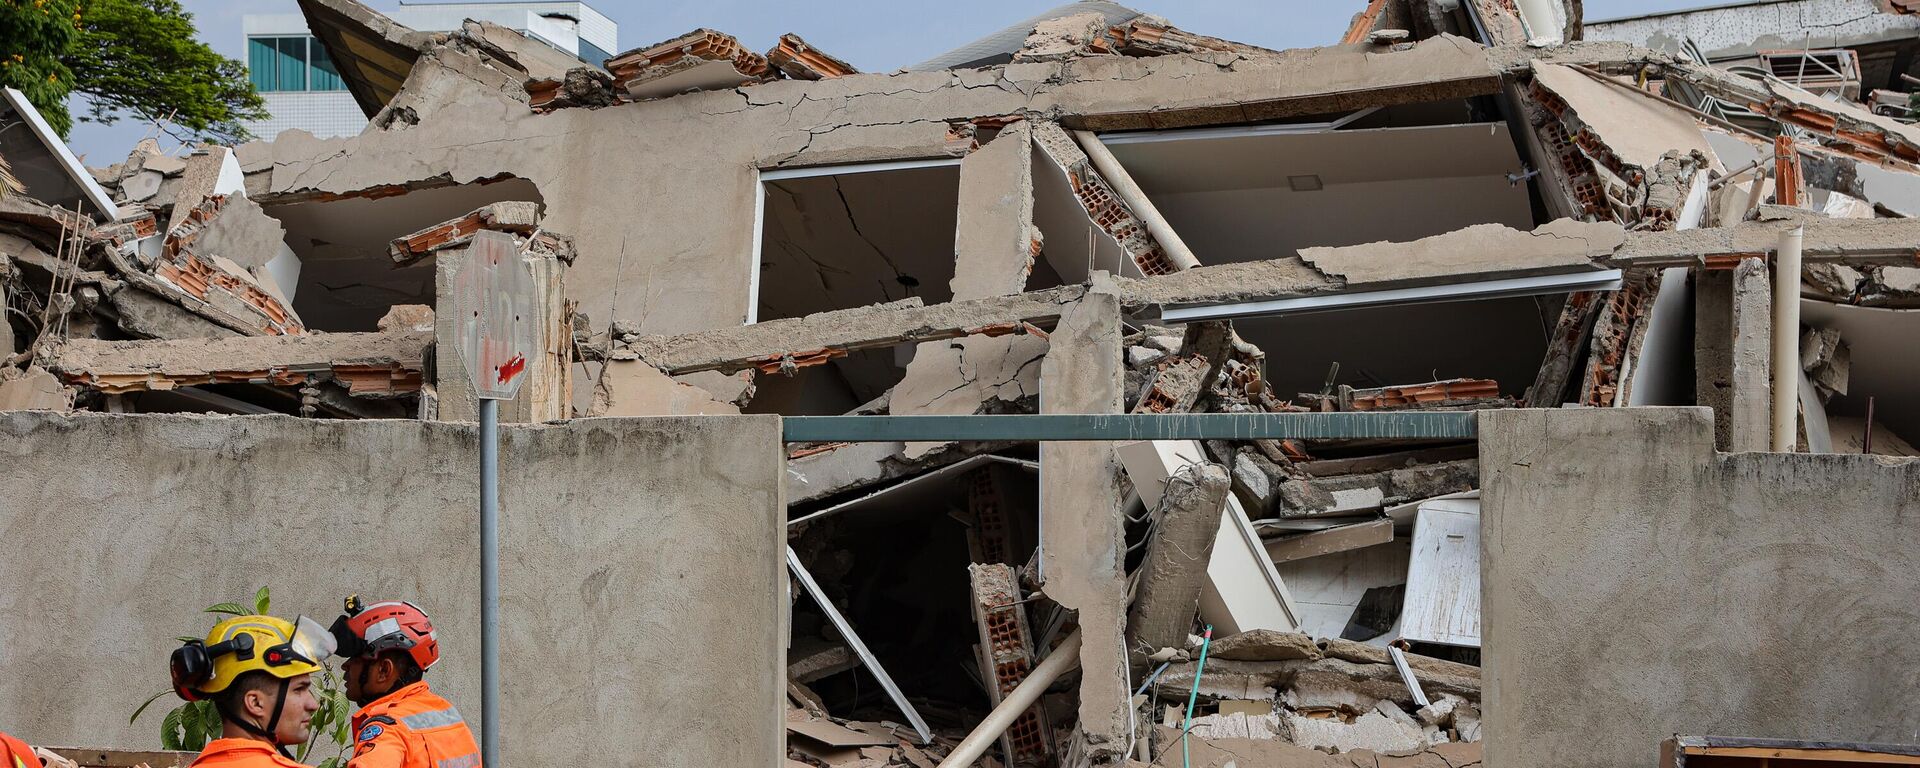 Prédio de cinco andares em construção desabou, na madrugada de 21 de setembro de 2022, no bairro Planalto, na Região Norte de Belo Horizonte, em Minas Gerais - Sputnik Brasil, 1920, 21.09.2022